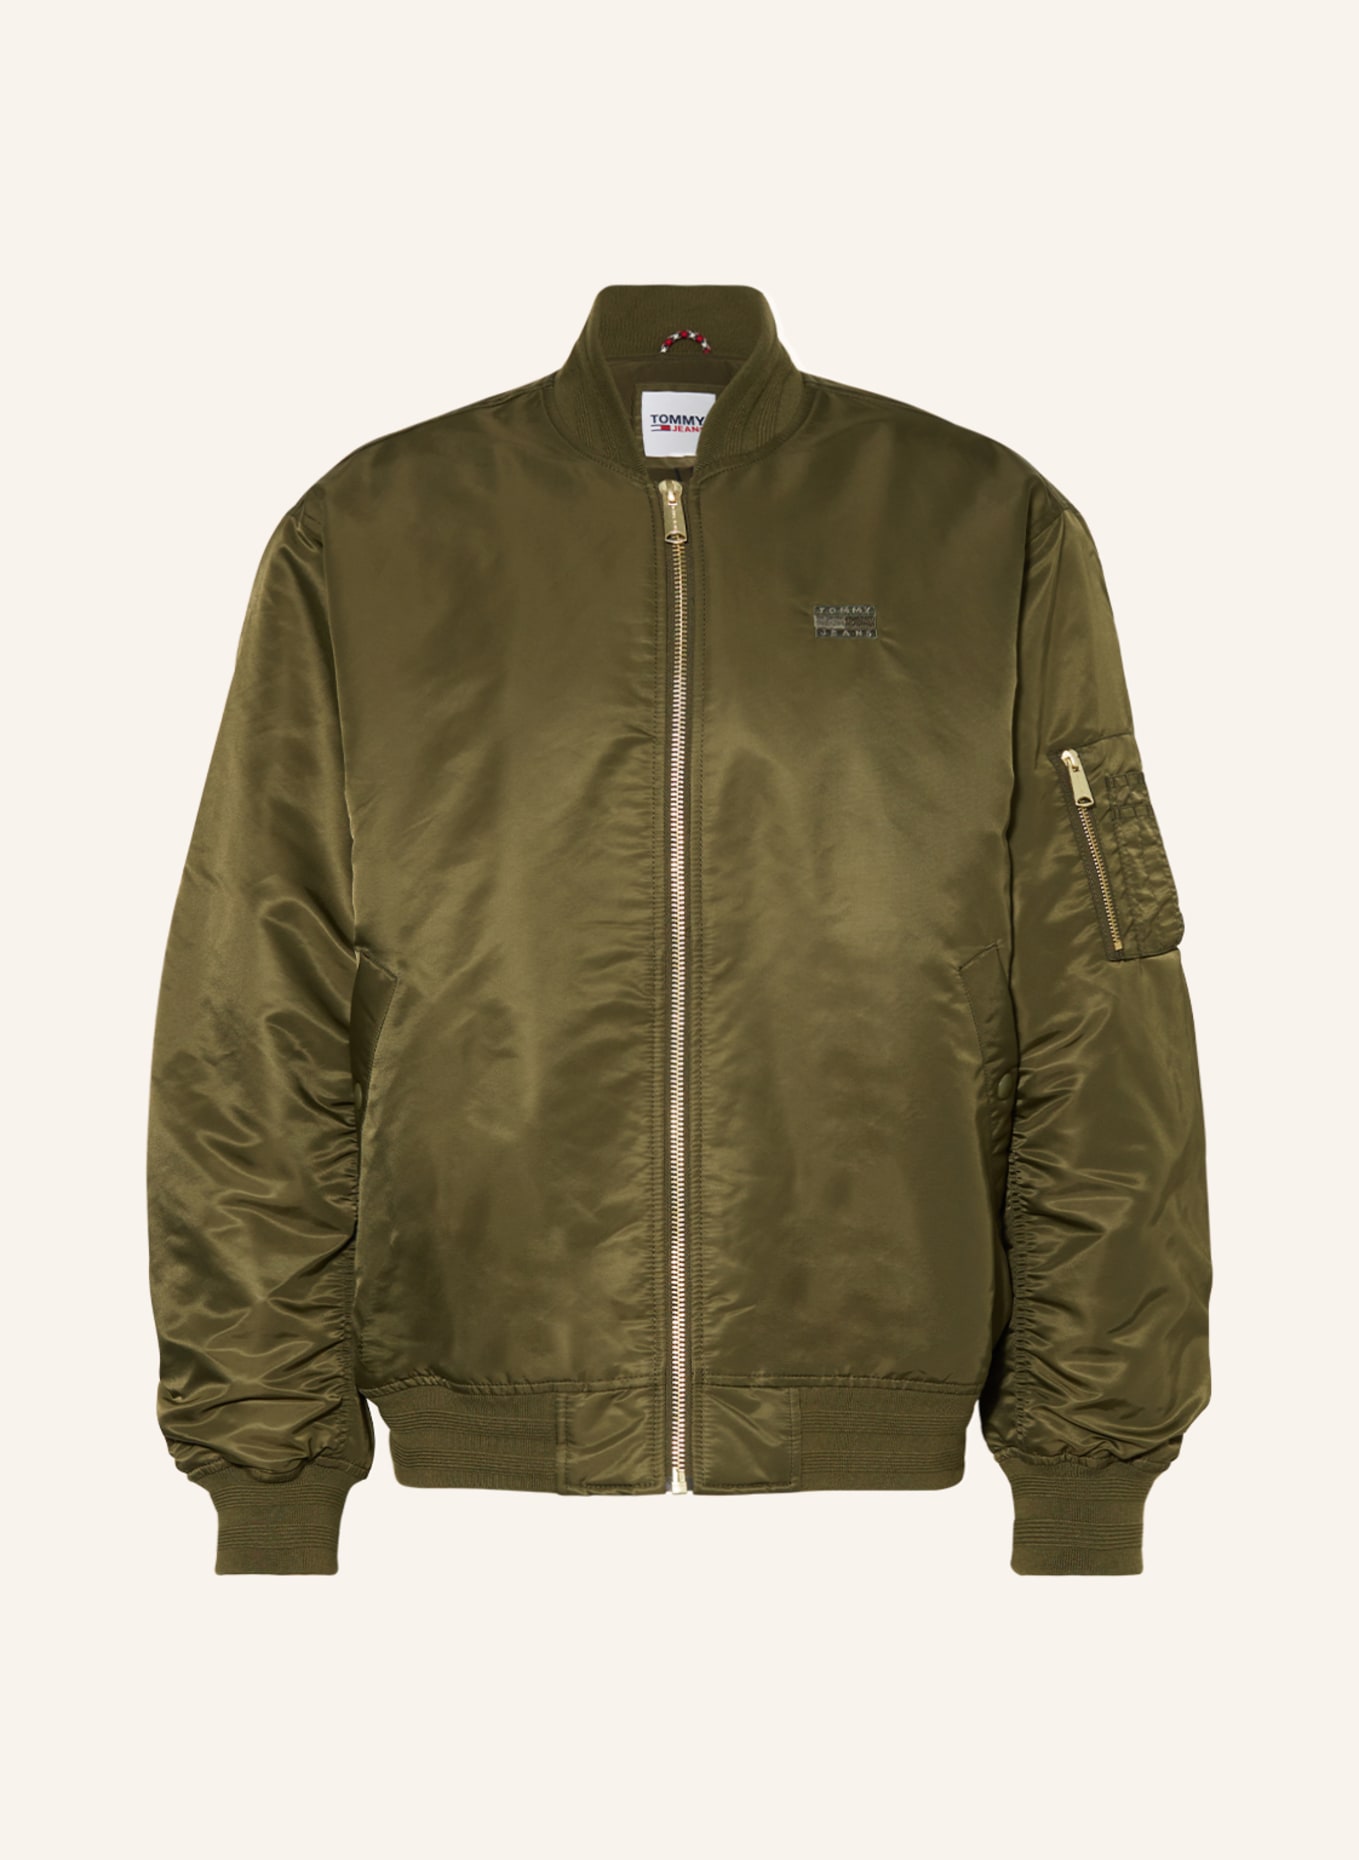 TOMMY JEANS Bomber jacket, Color: OLIVE (Image 1)